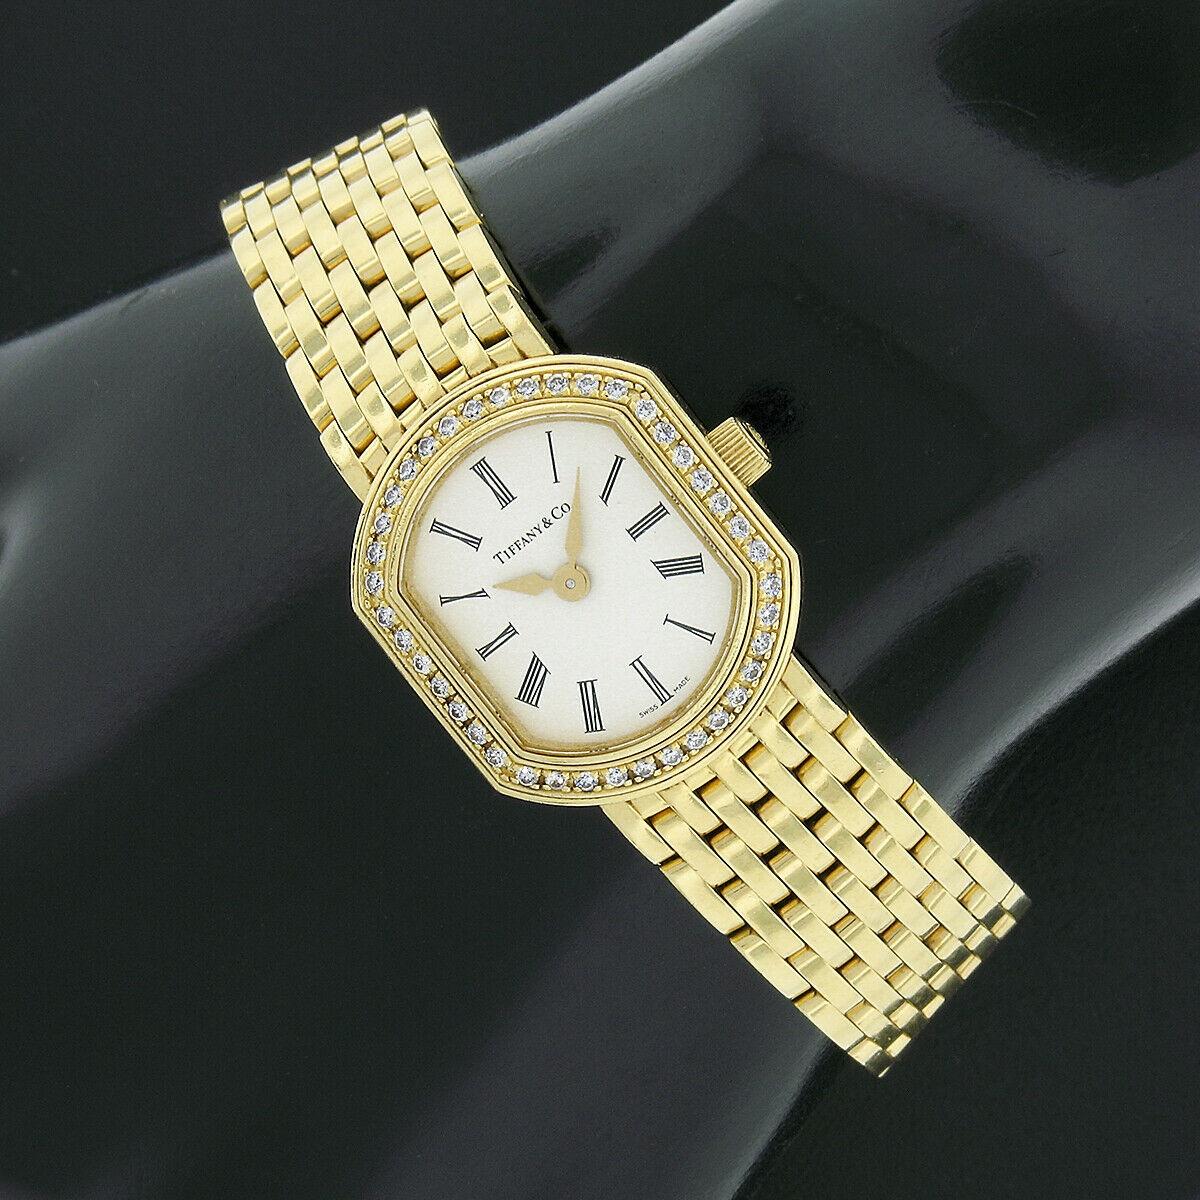 Diese elegante und gut verarbeitete Damenuhr von Tiffany & Co. Die Resonator Armbanduhr von Mark Coupe verfügt über ein kissenförmiges 21-mm-Gehäuse aus massivem 18-karätigem Gelbgold, das durchgehend mit einer hochwertigen Diamantlünette verziert